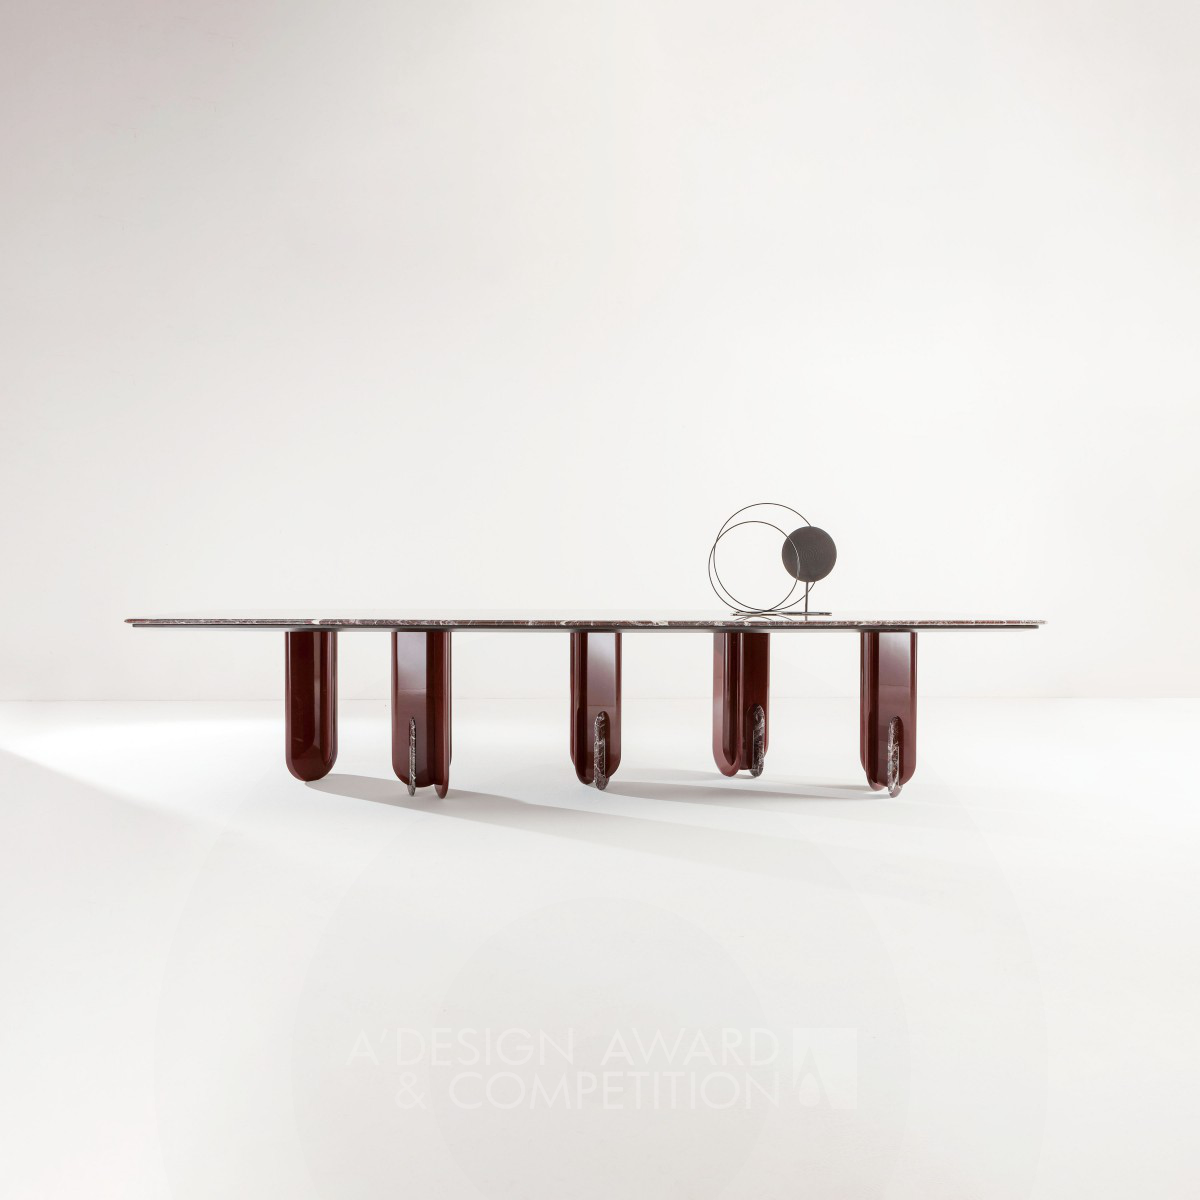 Edoardo Colzani wins Bronze at the prestigious A' Furniture Design Award with Talento Table.